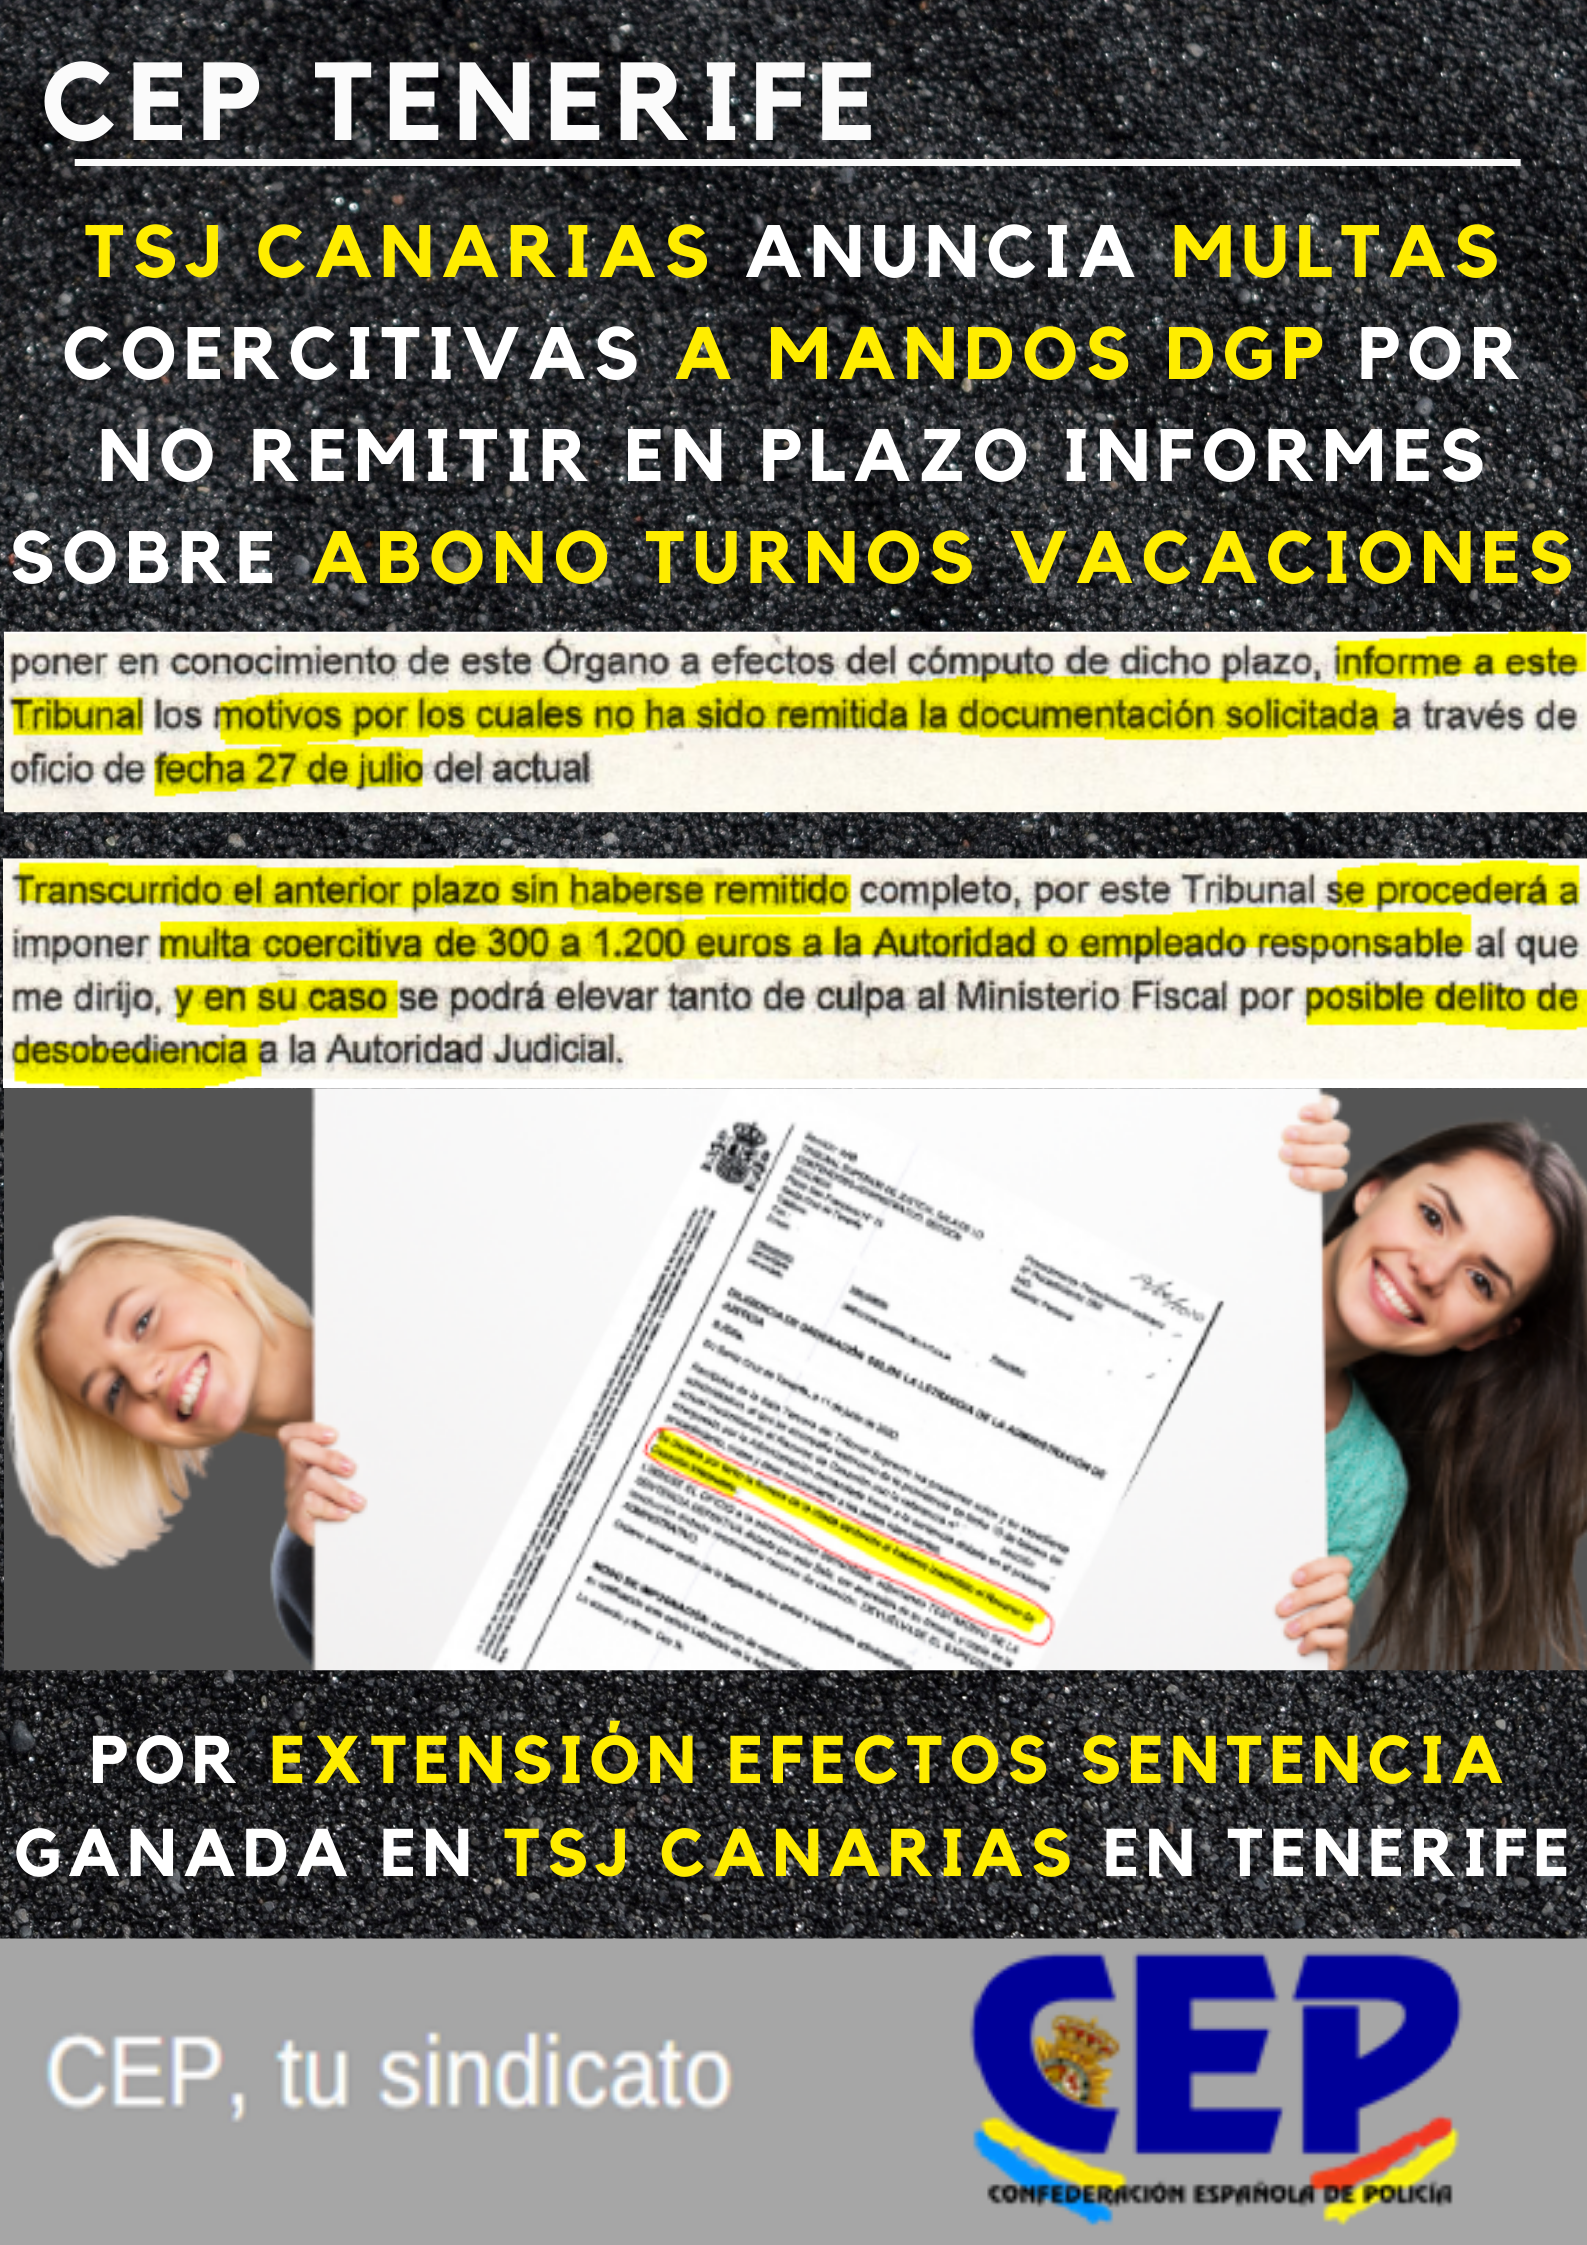 TSJ Canarias multa coercitiva a mandos DGP incumplir plazo documentación solicitada - extensión efectos sentencia ganada por CEP de abono turnos vacaciones